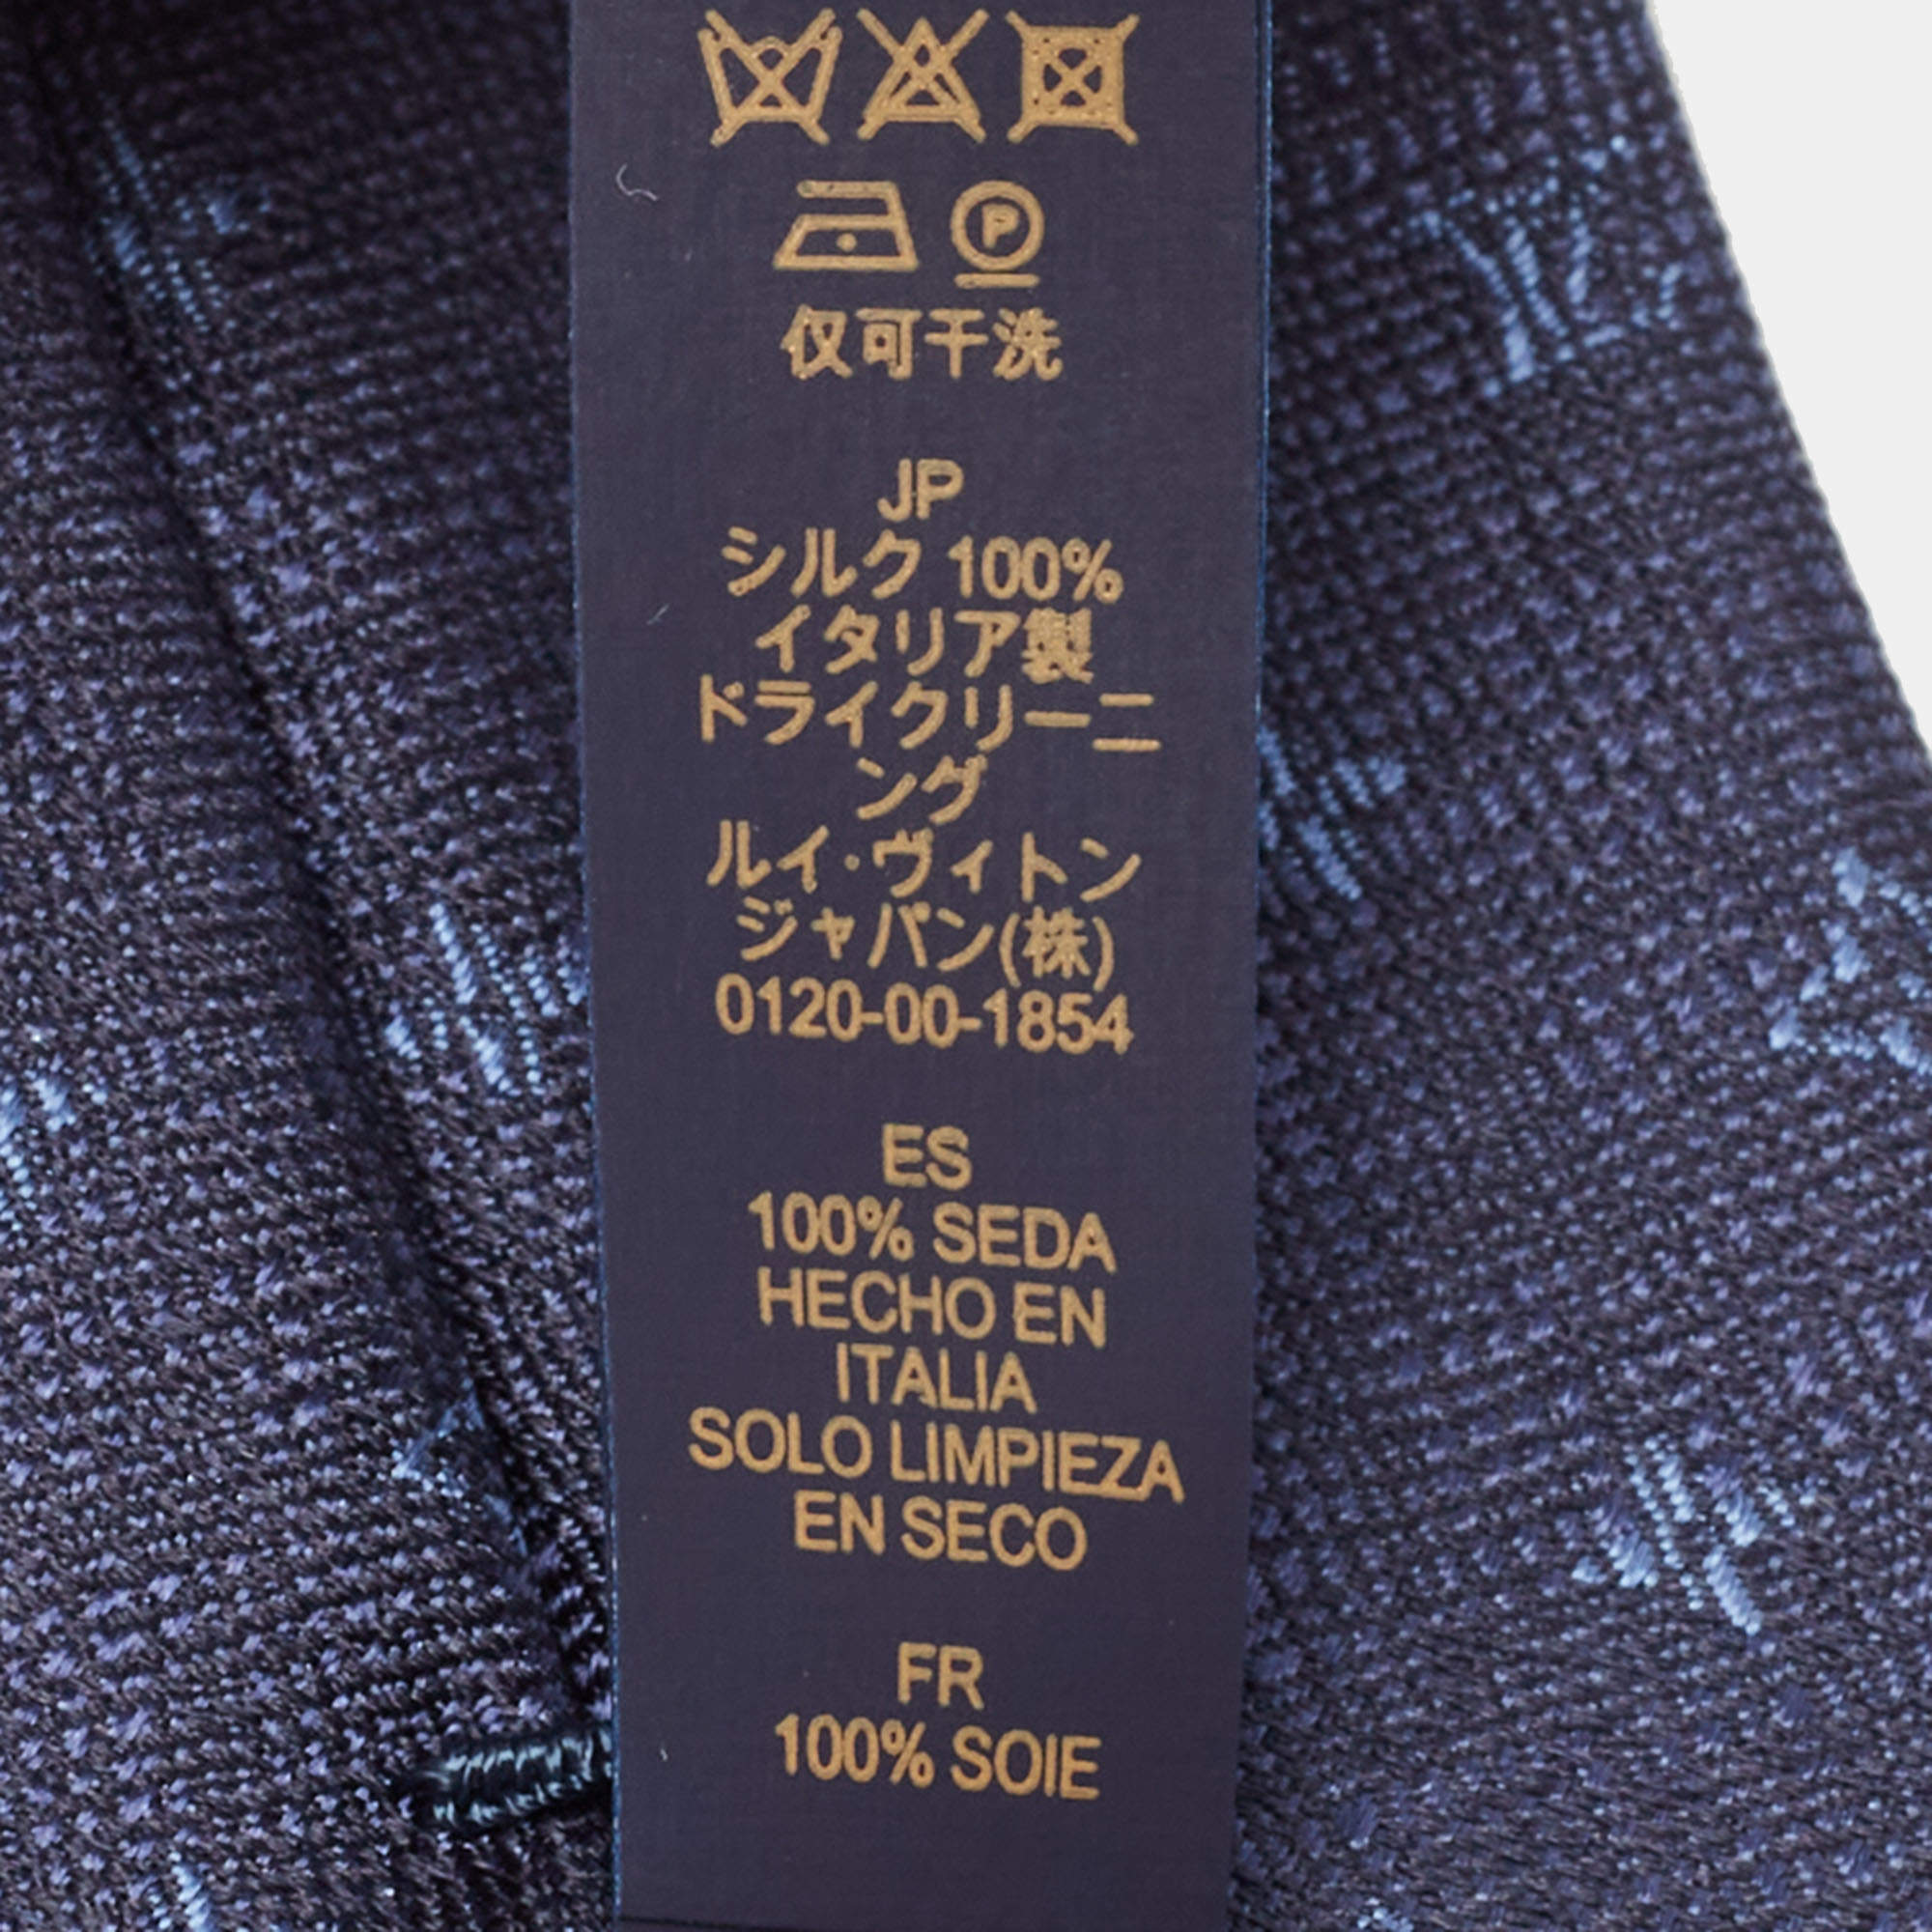 Silk tie Louis Vuitton Silver in Silk - 36800898